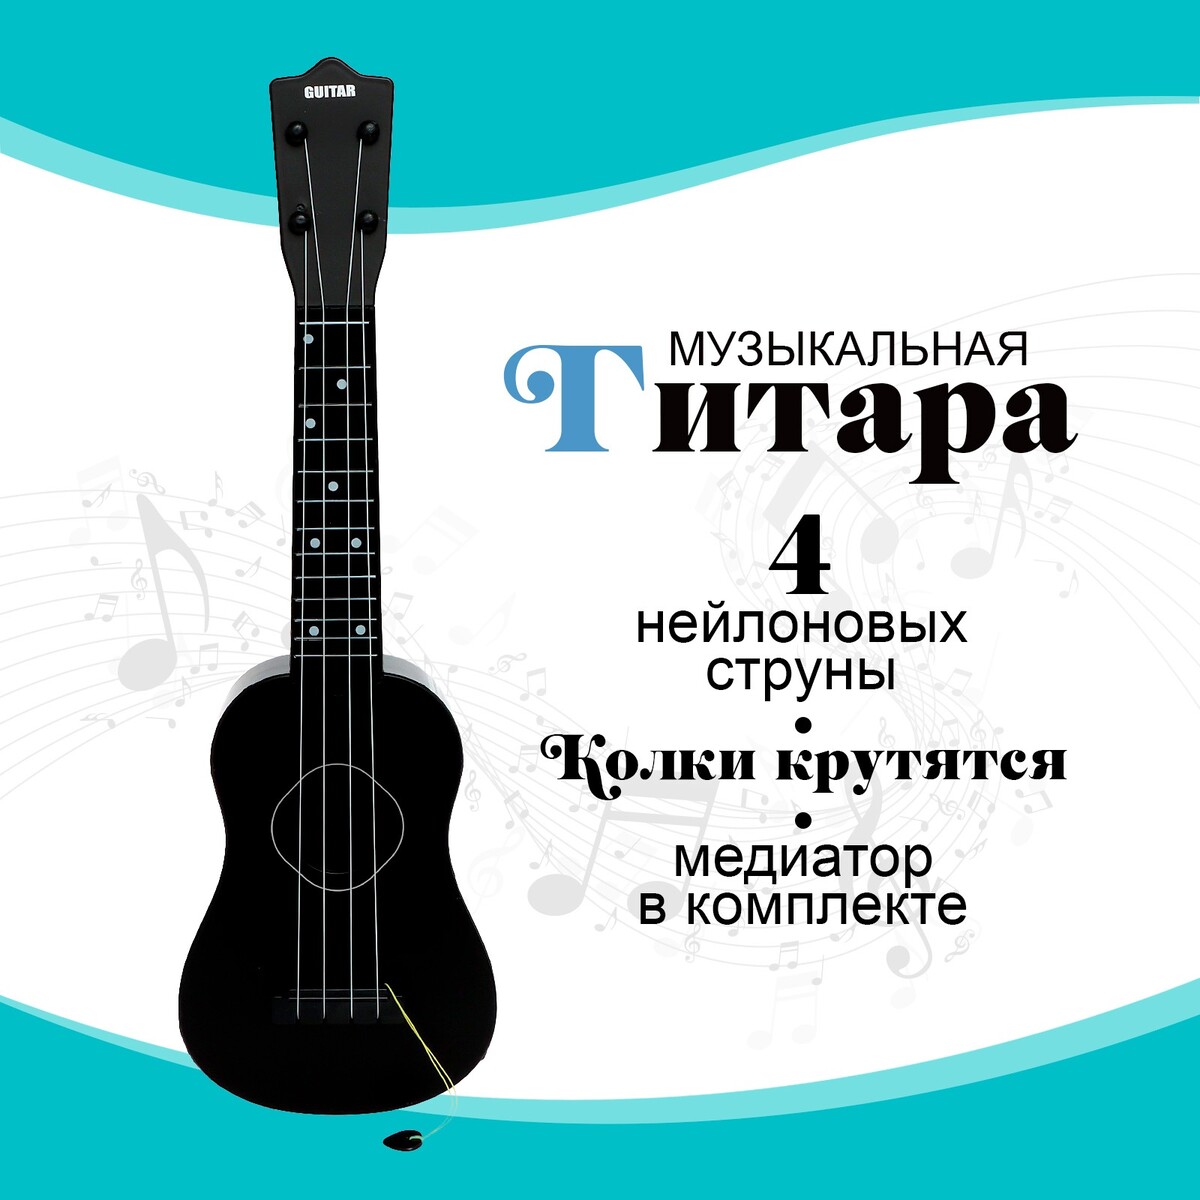 Игрушка музыкальная - гитара игрушка музыкальная гитара классическая 64 × 22 × 10 см